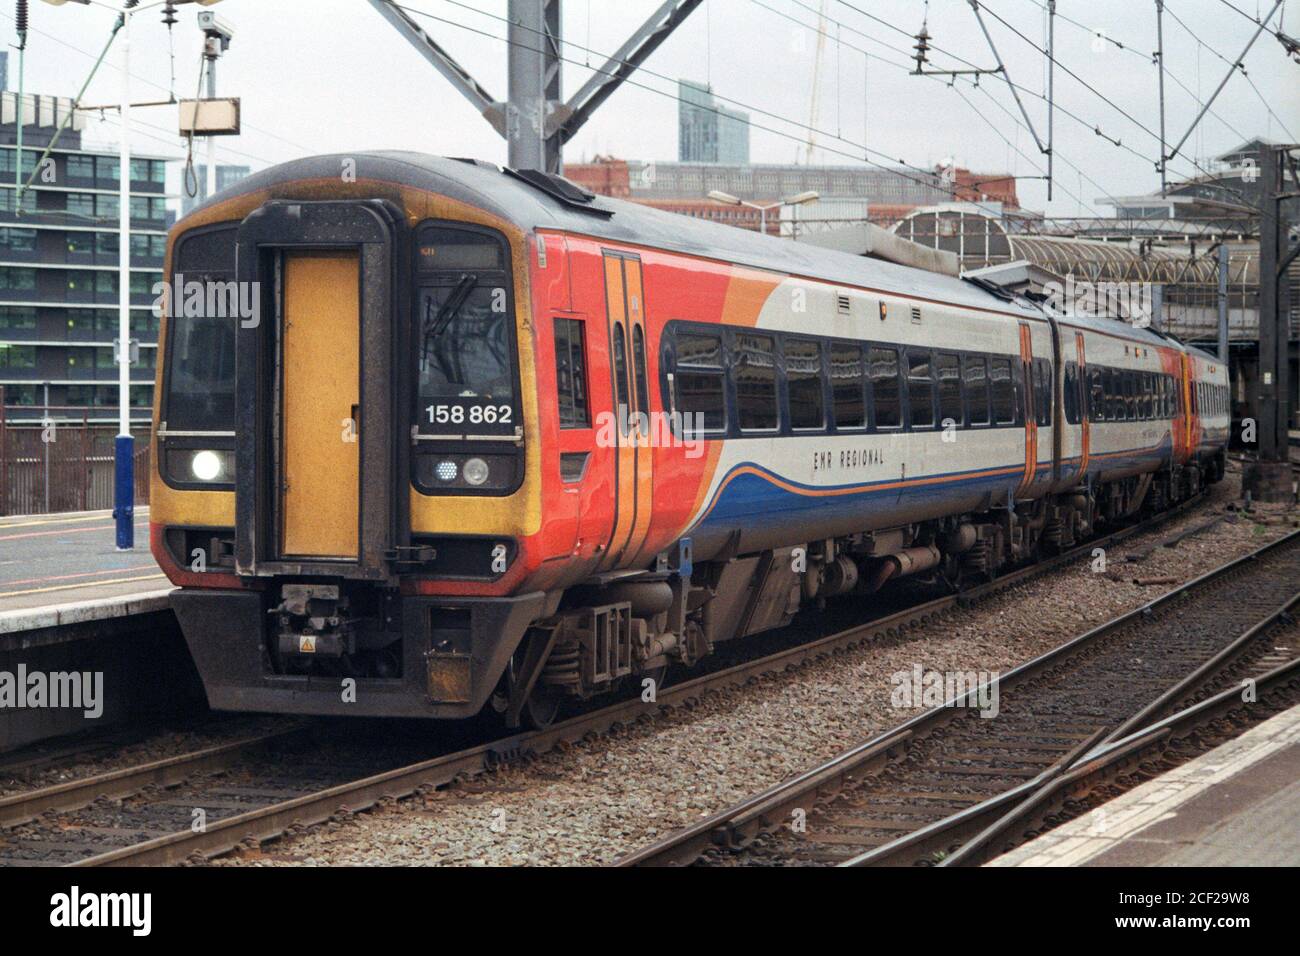 Manchester, Regno Unito - 29 agosto 2020: Un treno semi-veloce EMR (East Midlands Railway) alla piattaforma della stazione di Manchester Piccadilly 13. Foto Stock